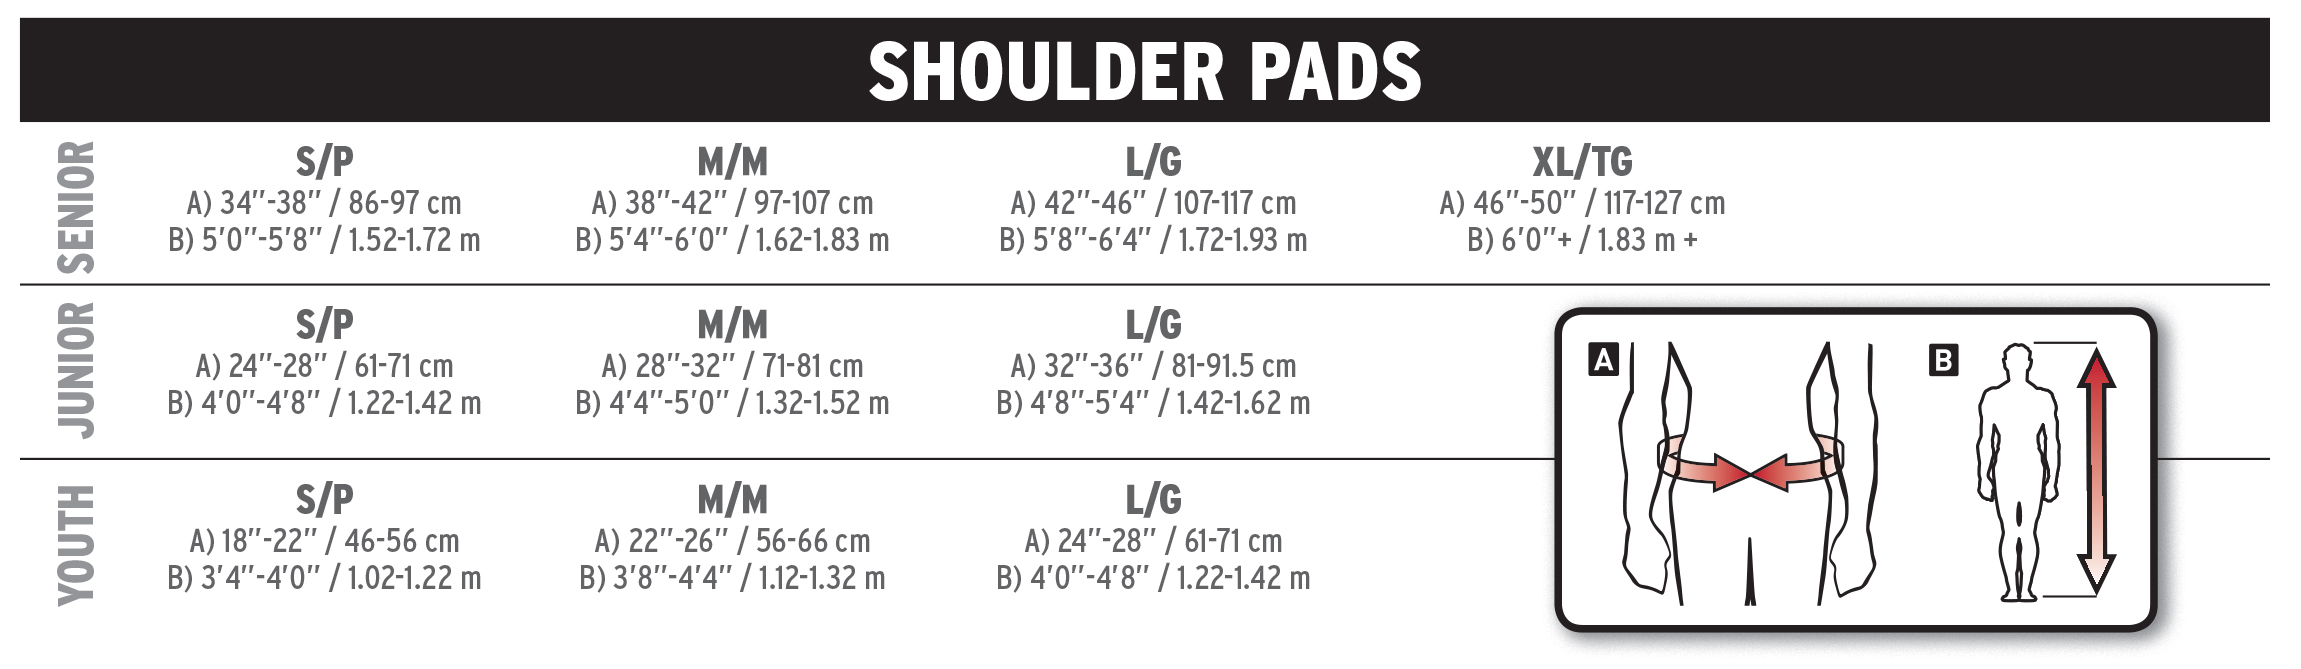 Ccm Shoulder Pads Size Chart